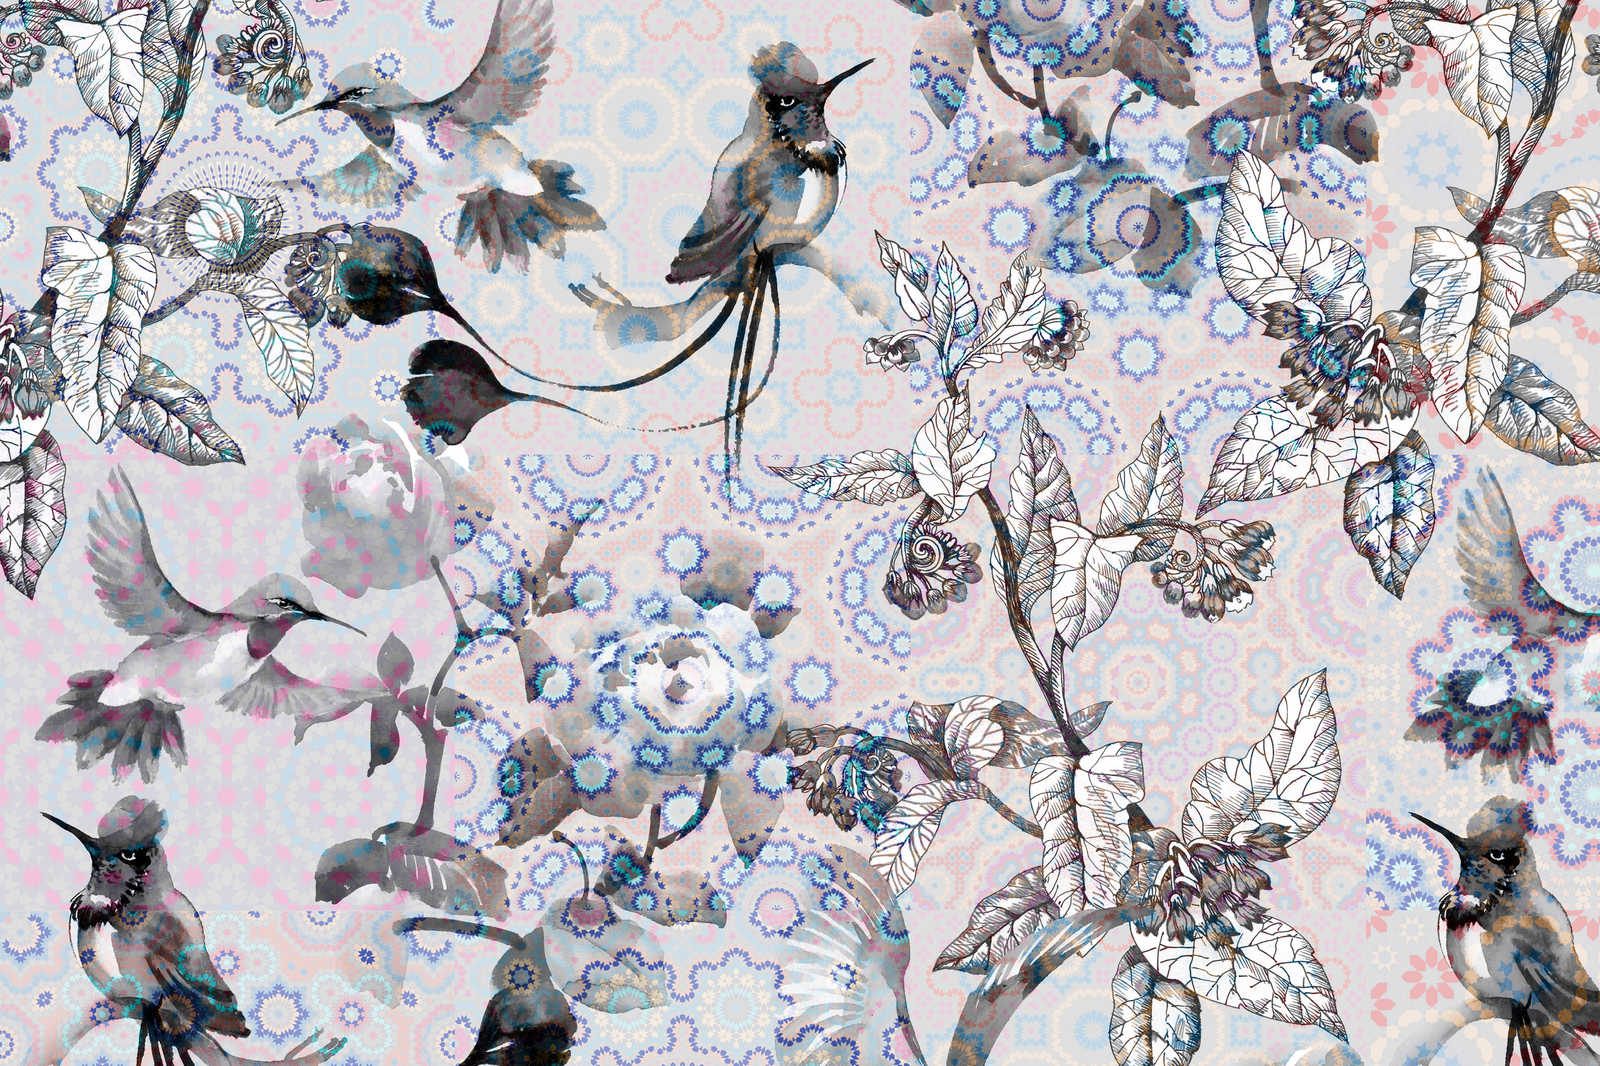             Canvas schilderij Nature Design in collagestijl | exotisch mozaïek 3 - 0,90 m x 0,60 m
        